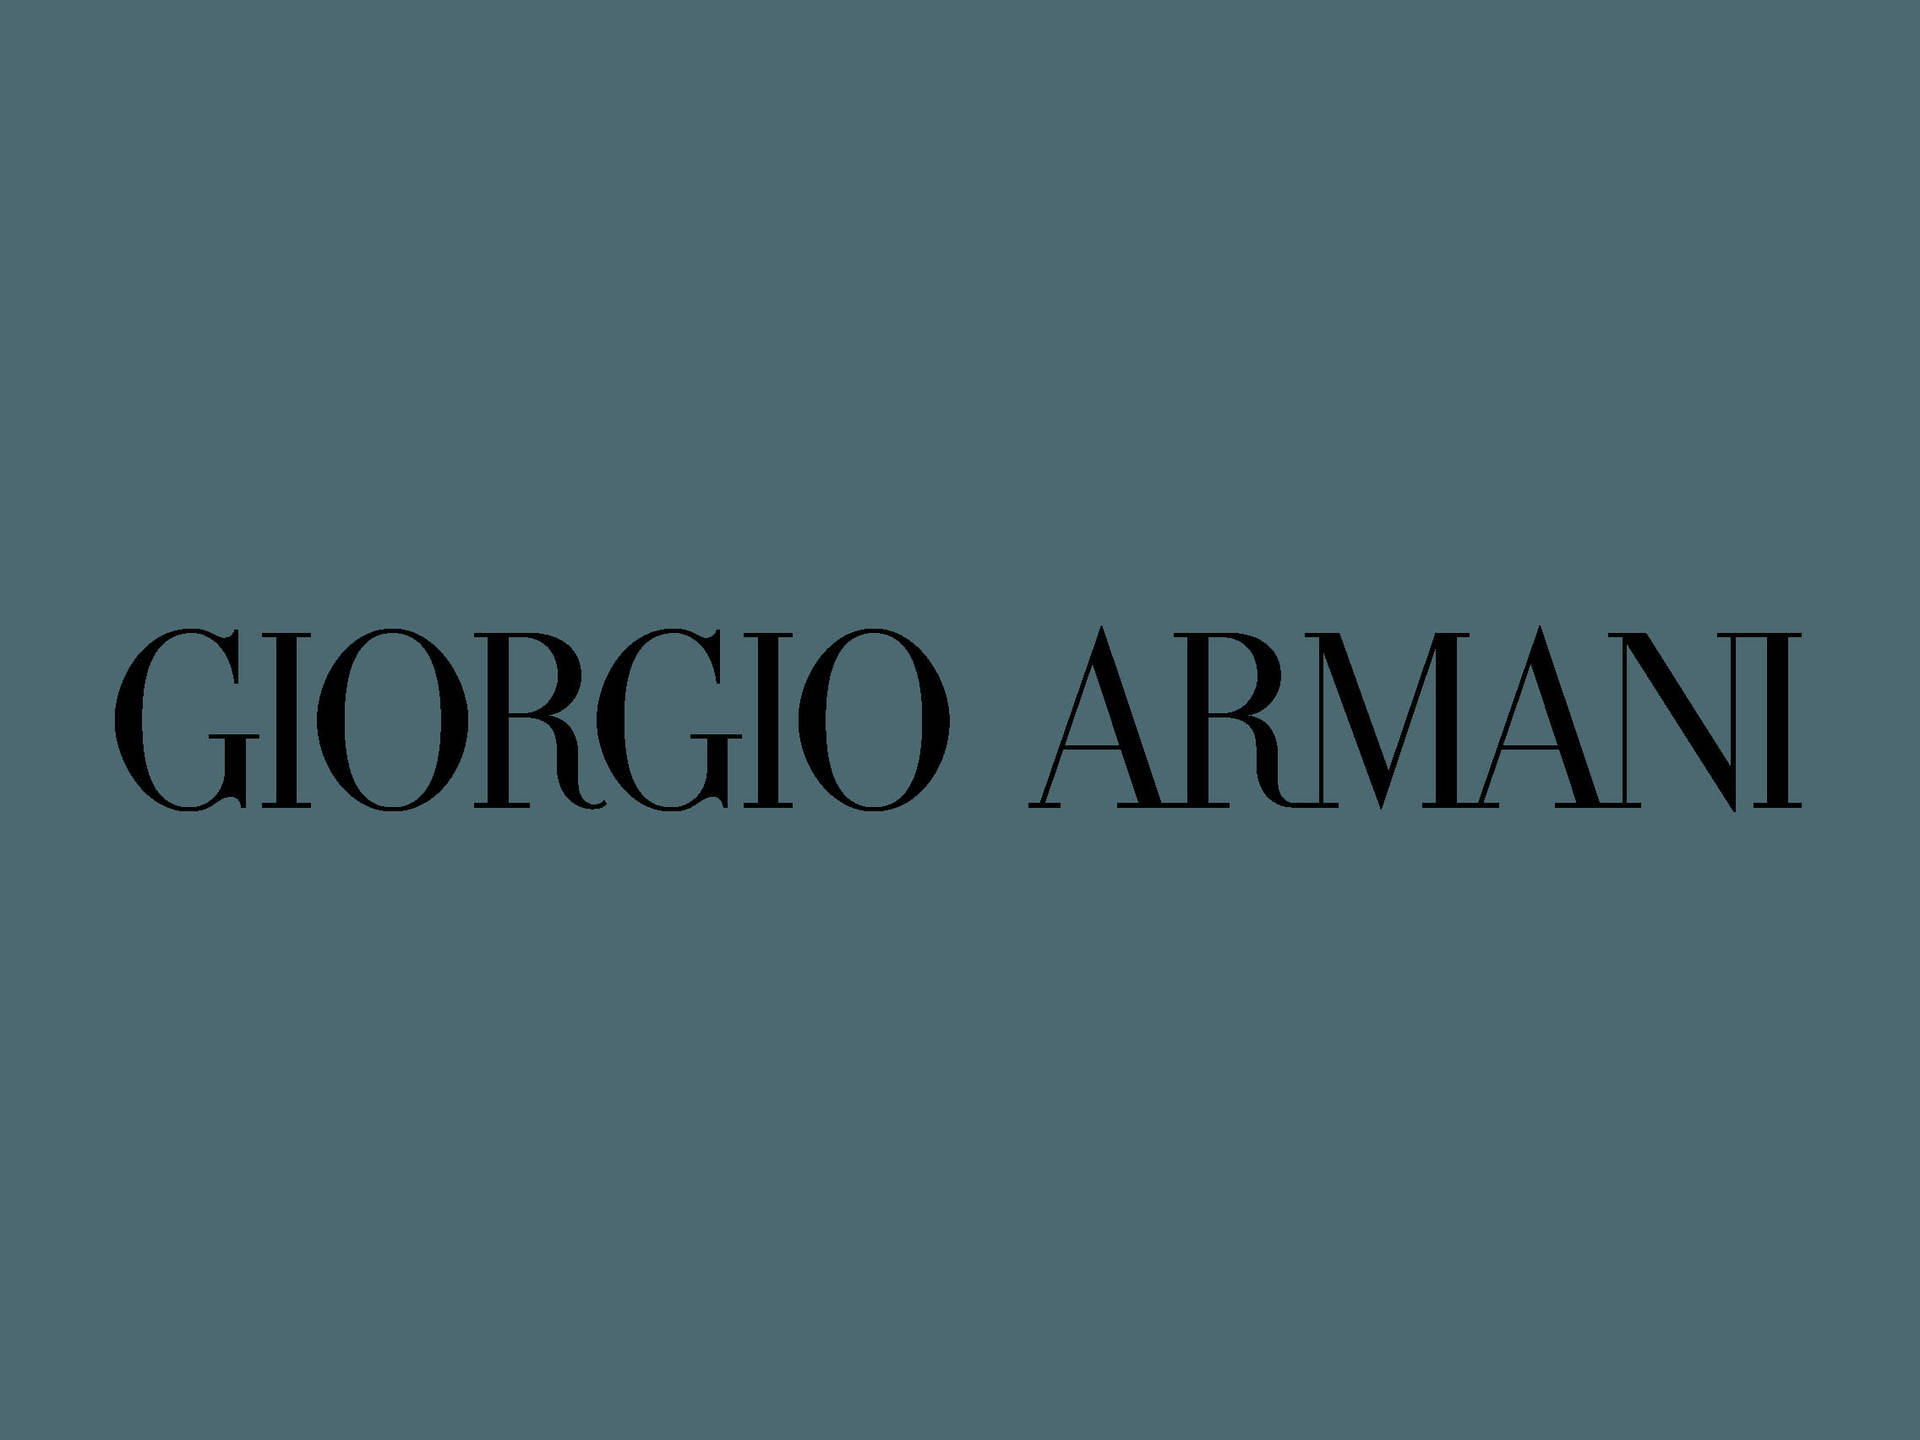 Exquisite Fashion - Giorgio Armani Wallpaper